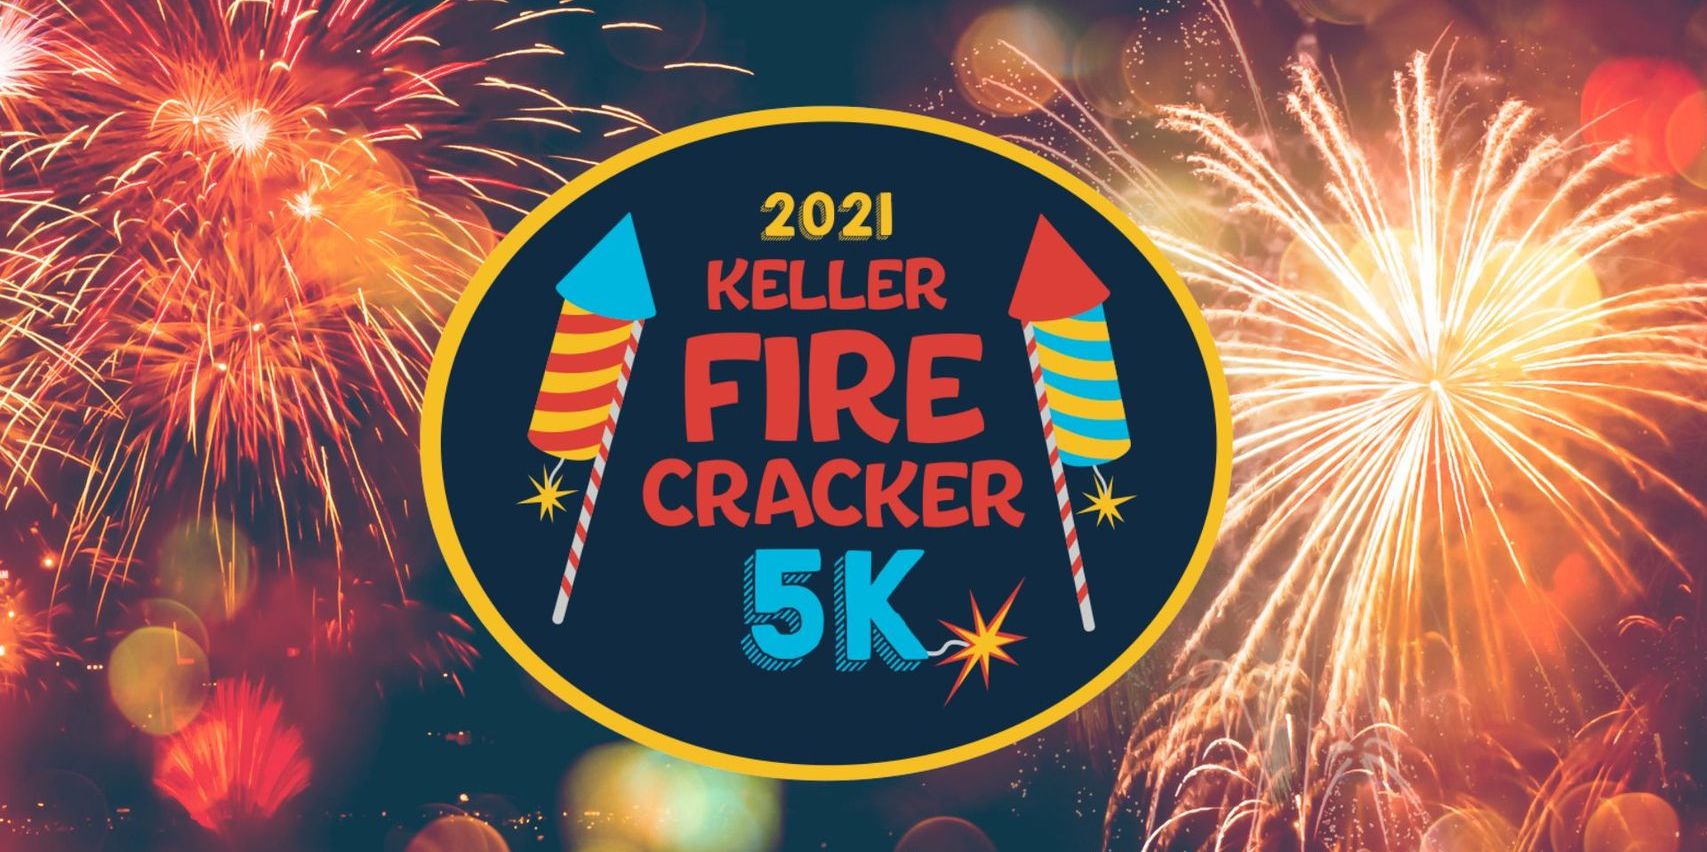 Keller Firecracker 5K promotional image